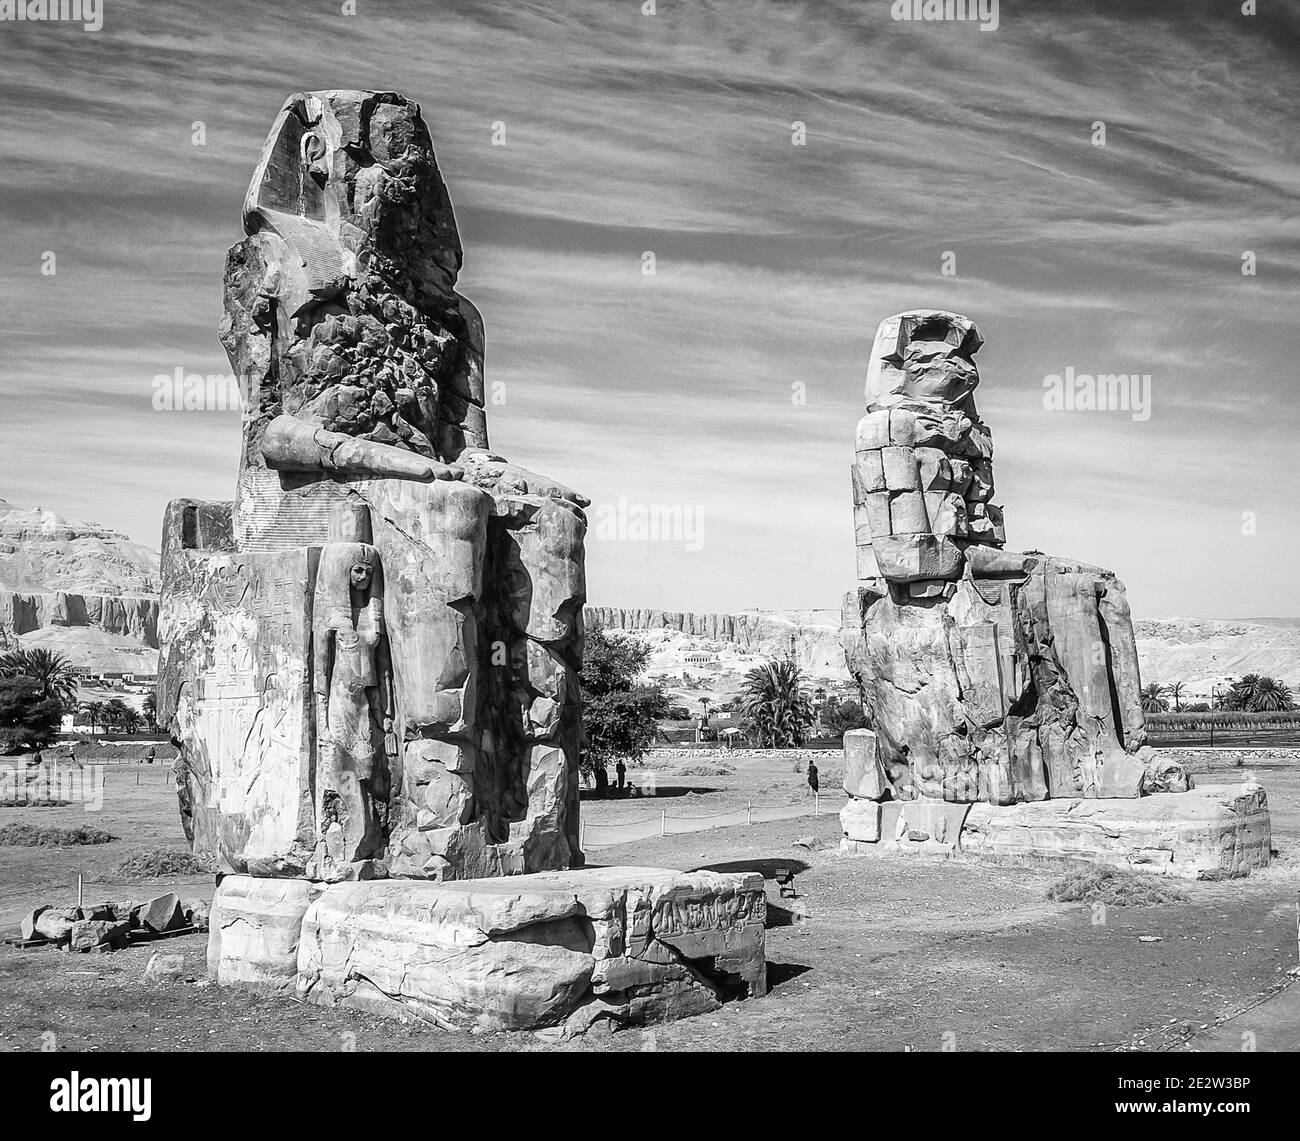 Luxor. Questo è il sito archeologico del 1350 a.C. presso i Colossi di Memnone dell'Antico Egitto, non lontano dal fiume Nilo e dalla città di Luxor precedentemente conosciuta come Tebe. Le statue sono del faraone Amenhotep III, ci sono due statue più piccole ai suoi piedi, una è sua madre, l'altra sua moglie. Inizialmente costruiti per proteggere l'ingresso al tempio di Amenotep contro il male, sono stati anche visti per proteggere la riva occidentale del Nilo. I Colossi hanno sofferto di gravi danni sismici, ma dopo 3500 anni rimangono in piedi. Foto Stock